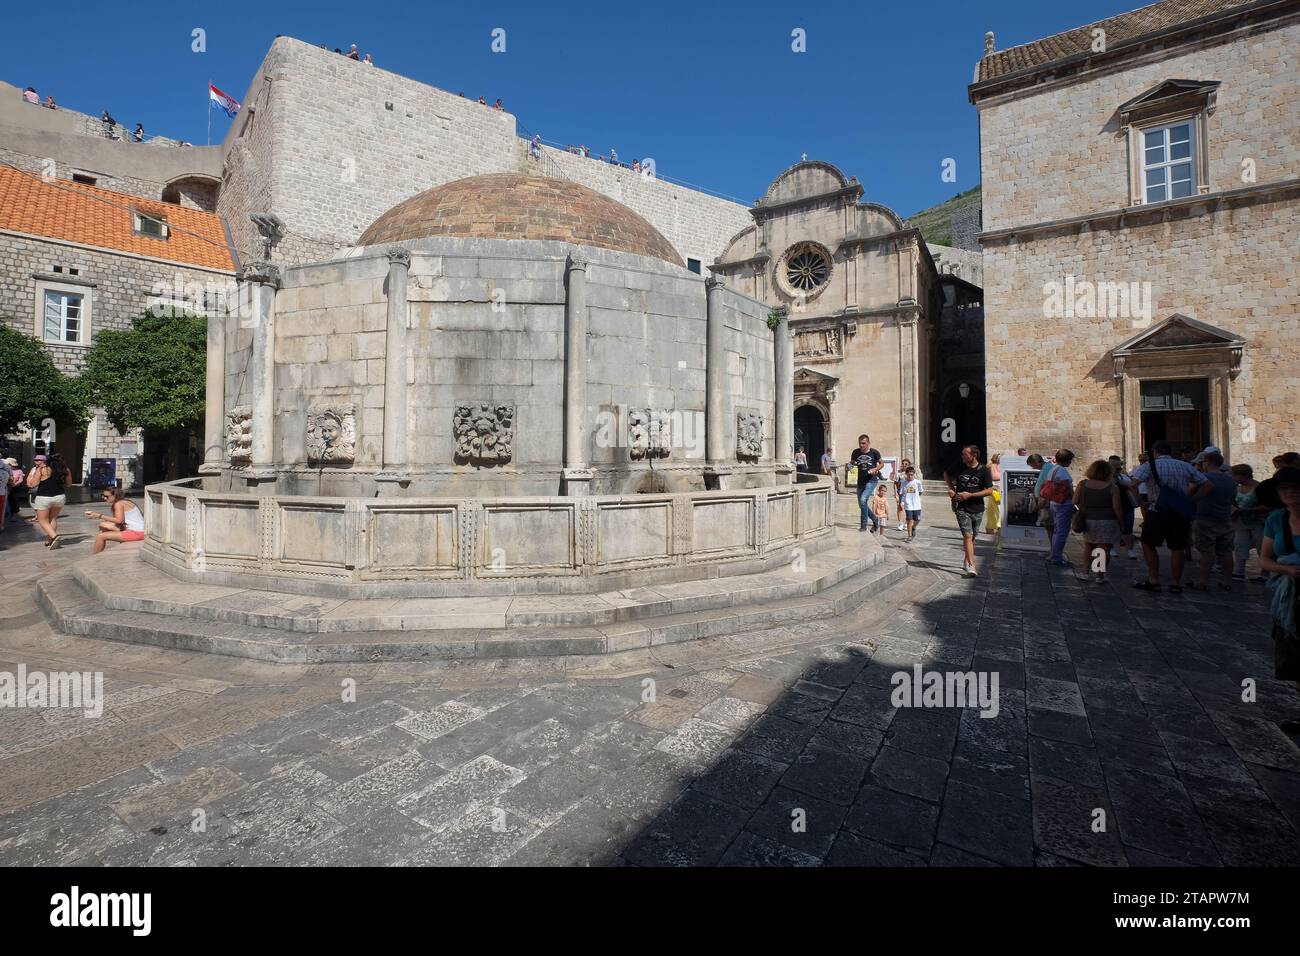 Grande Onofrio la fontana della piazza di Stradun Street nella città vecchia di Dubrovnik, Croazia Foto Stock